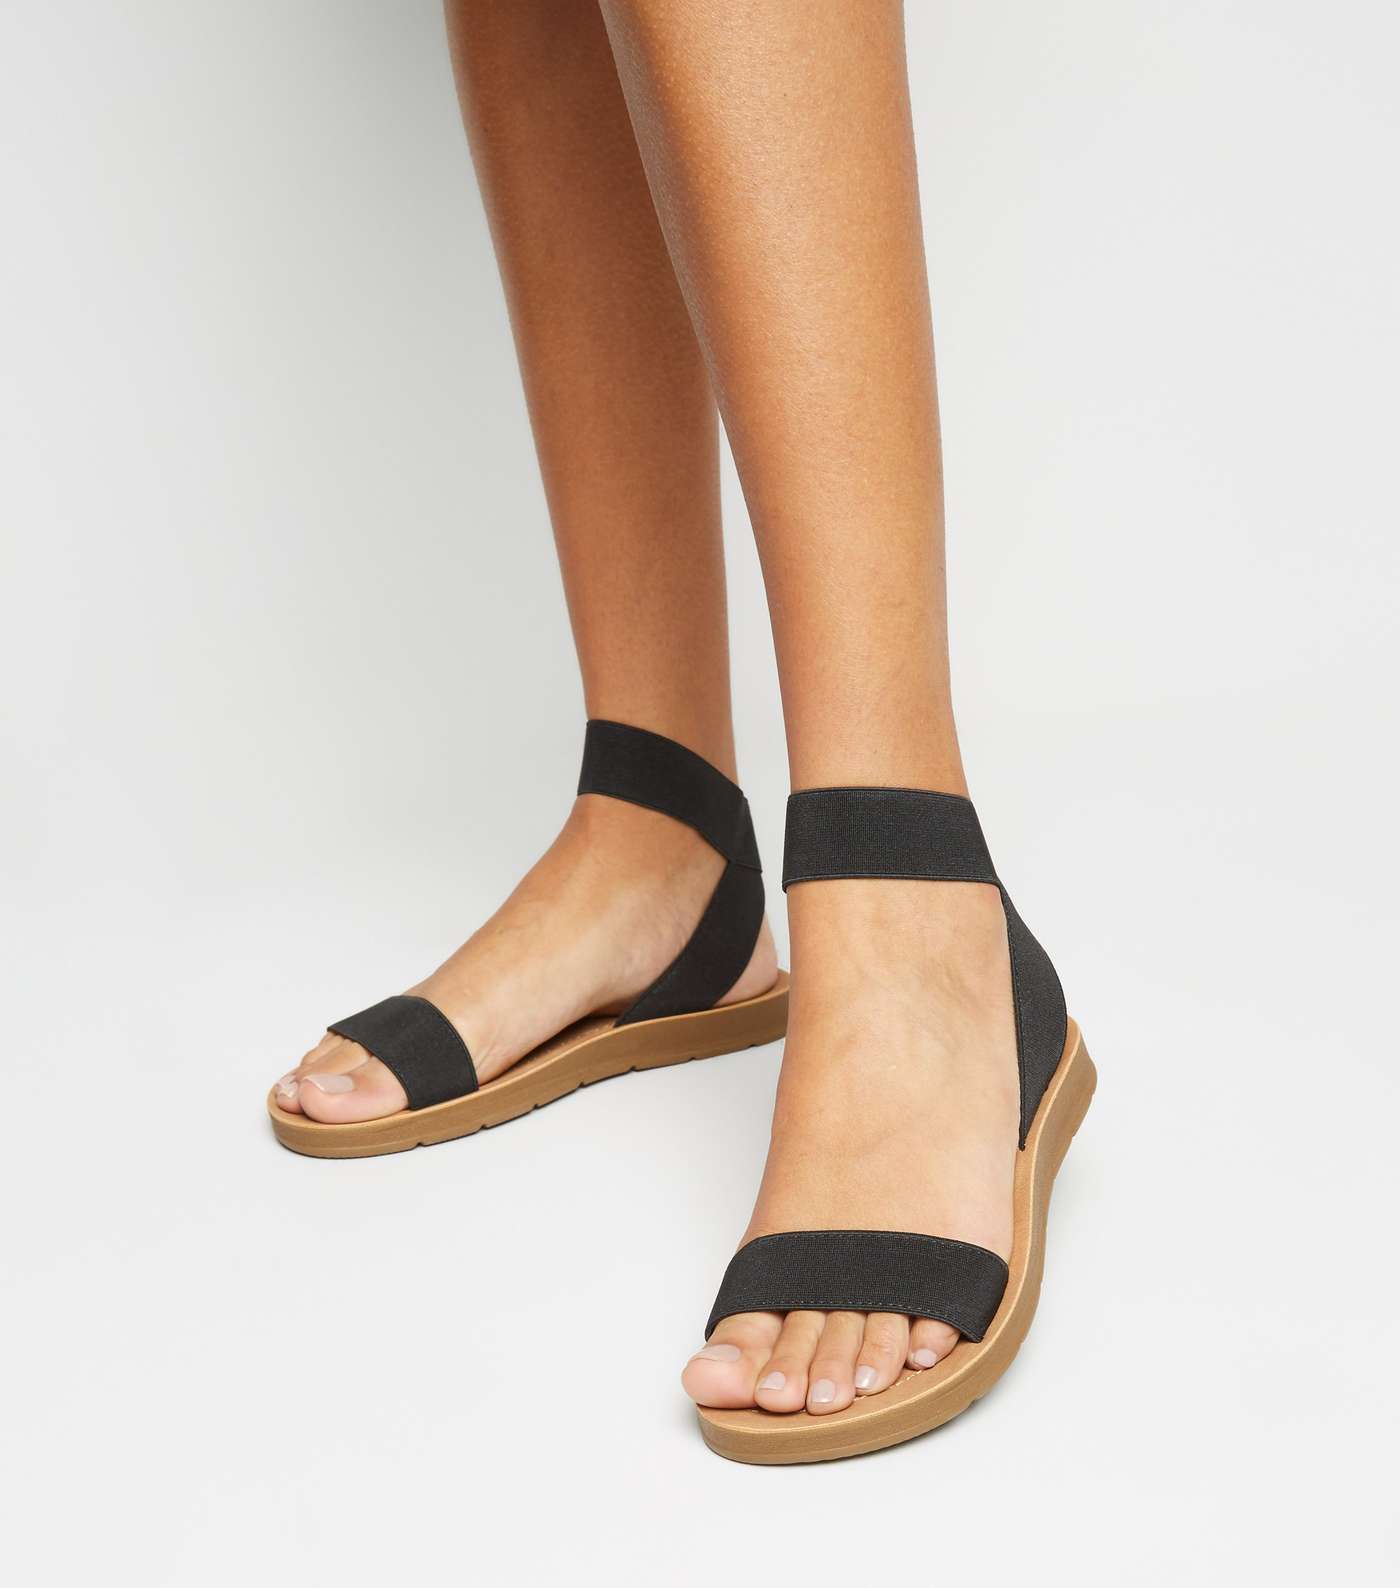 Black Elastic Strap Flexible Sole Sandals Image 2